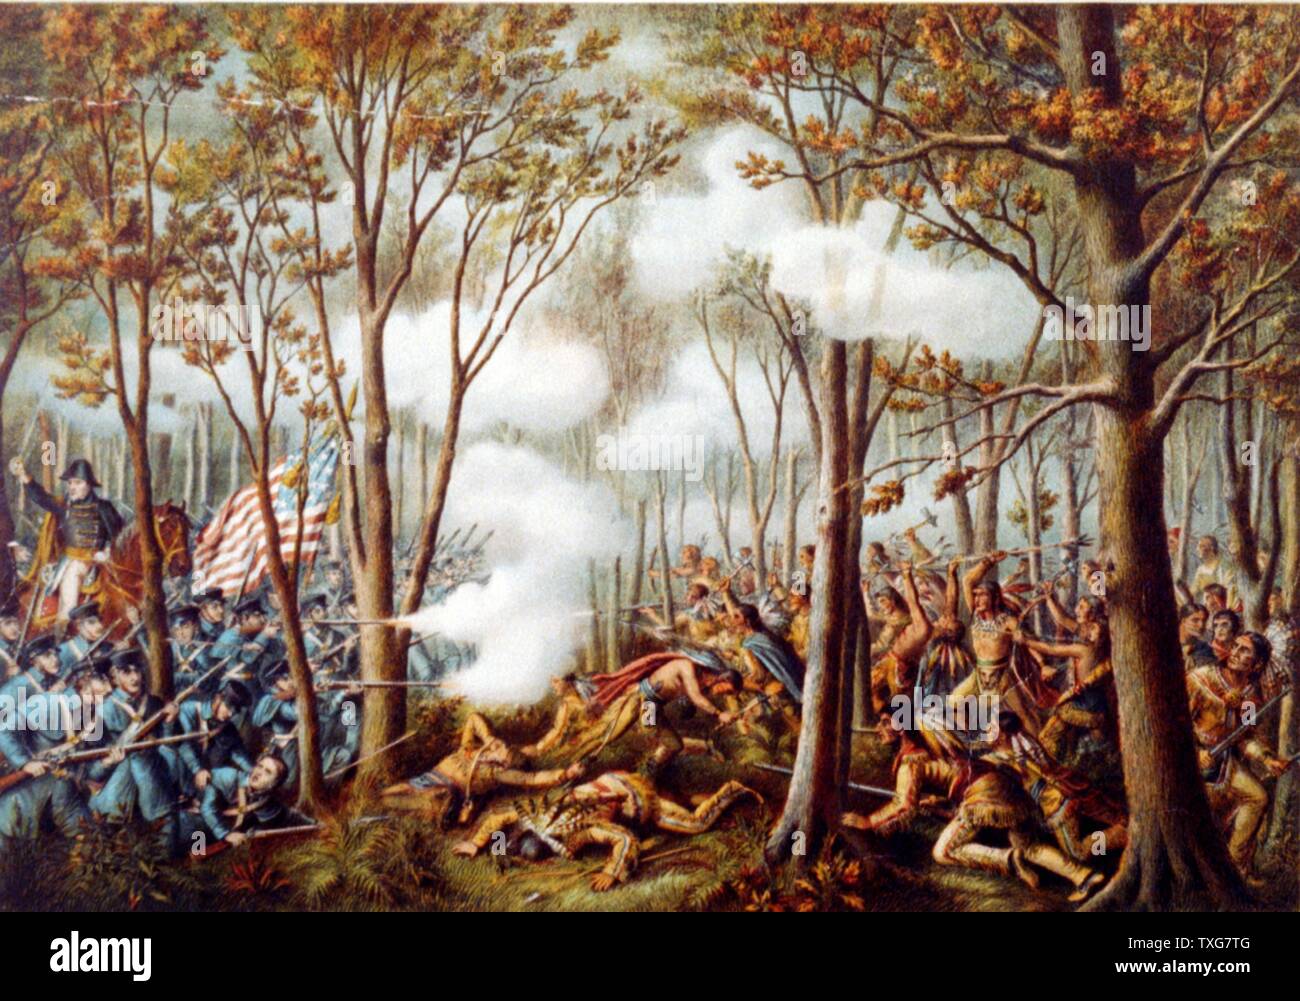 Tecumseh's War 1811-1813: Schlacht von Tippecanoe, 7. November 1811 auf indischem Territorium Kämpfen zwischen US-Truppen unter Gouverneur William Harrison und Indianischen Eidgenossenschaft geführt von Tecumseh, Shawnee Chromolithograph Stockfoto